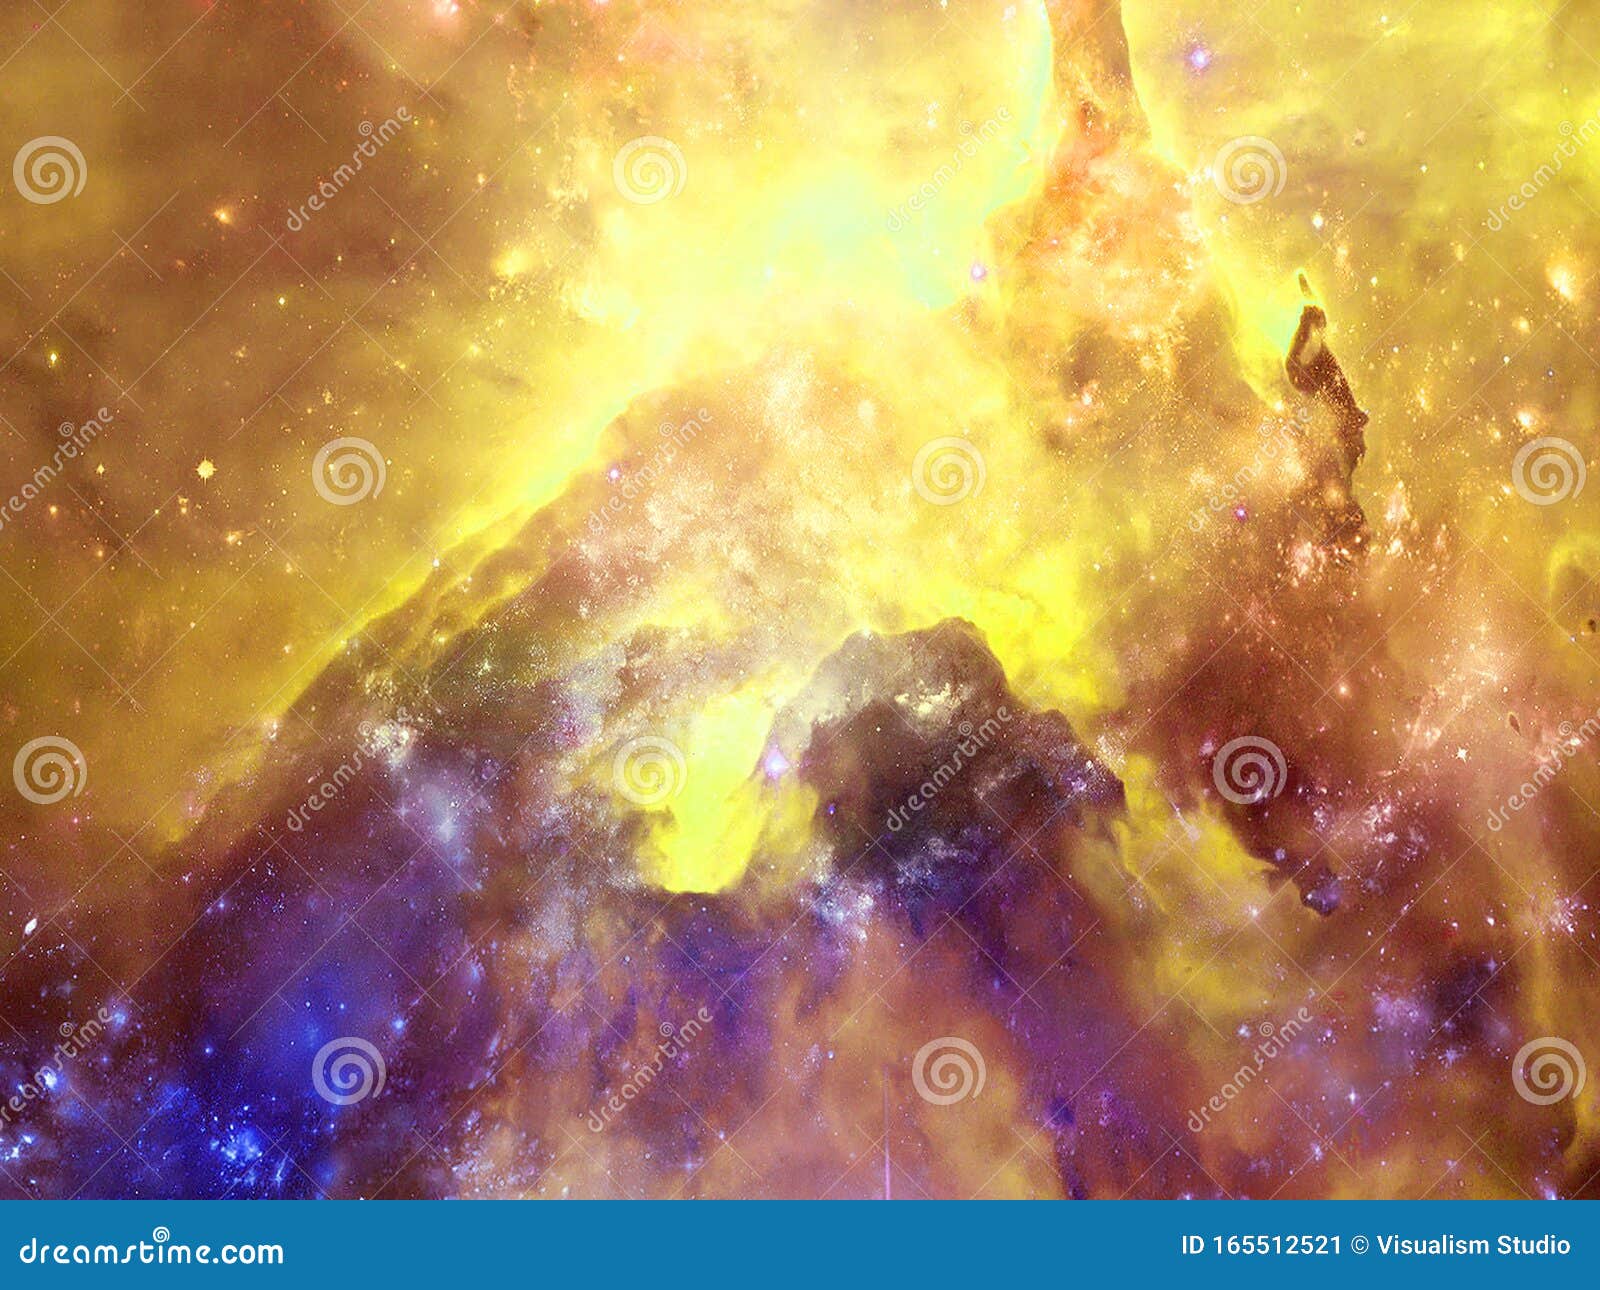 无限美丽的宇宙深蓝金色背景星云星簇无尽宇宙之美库存图片 图片包括有晚上 无限 深深 乳状